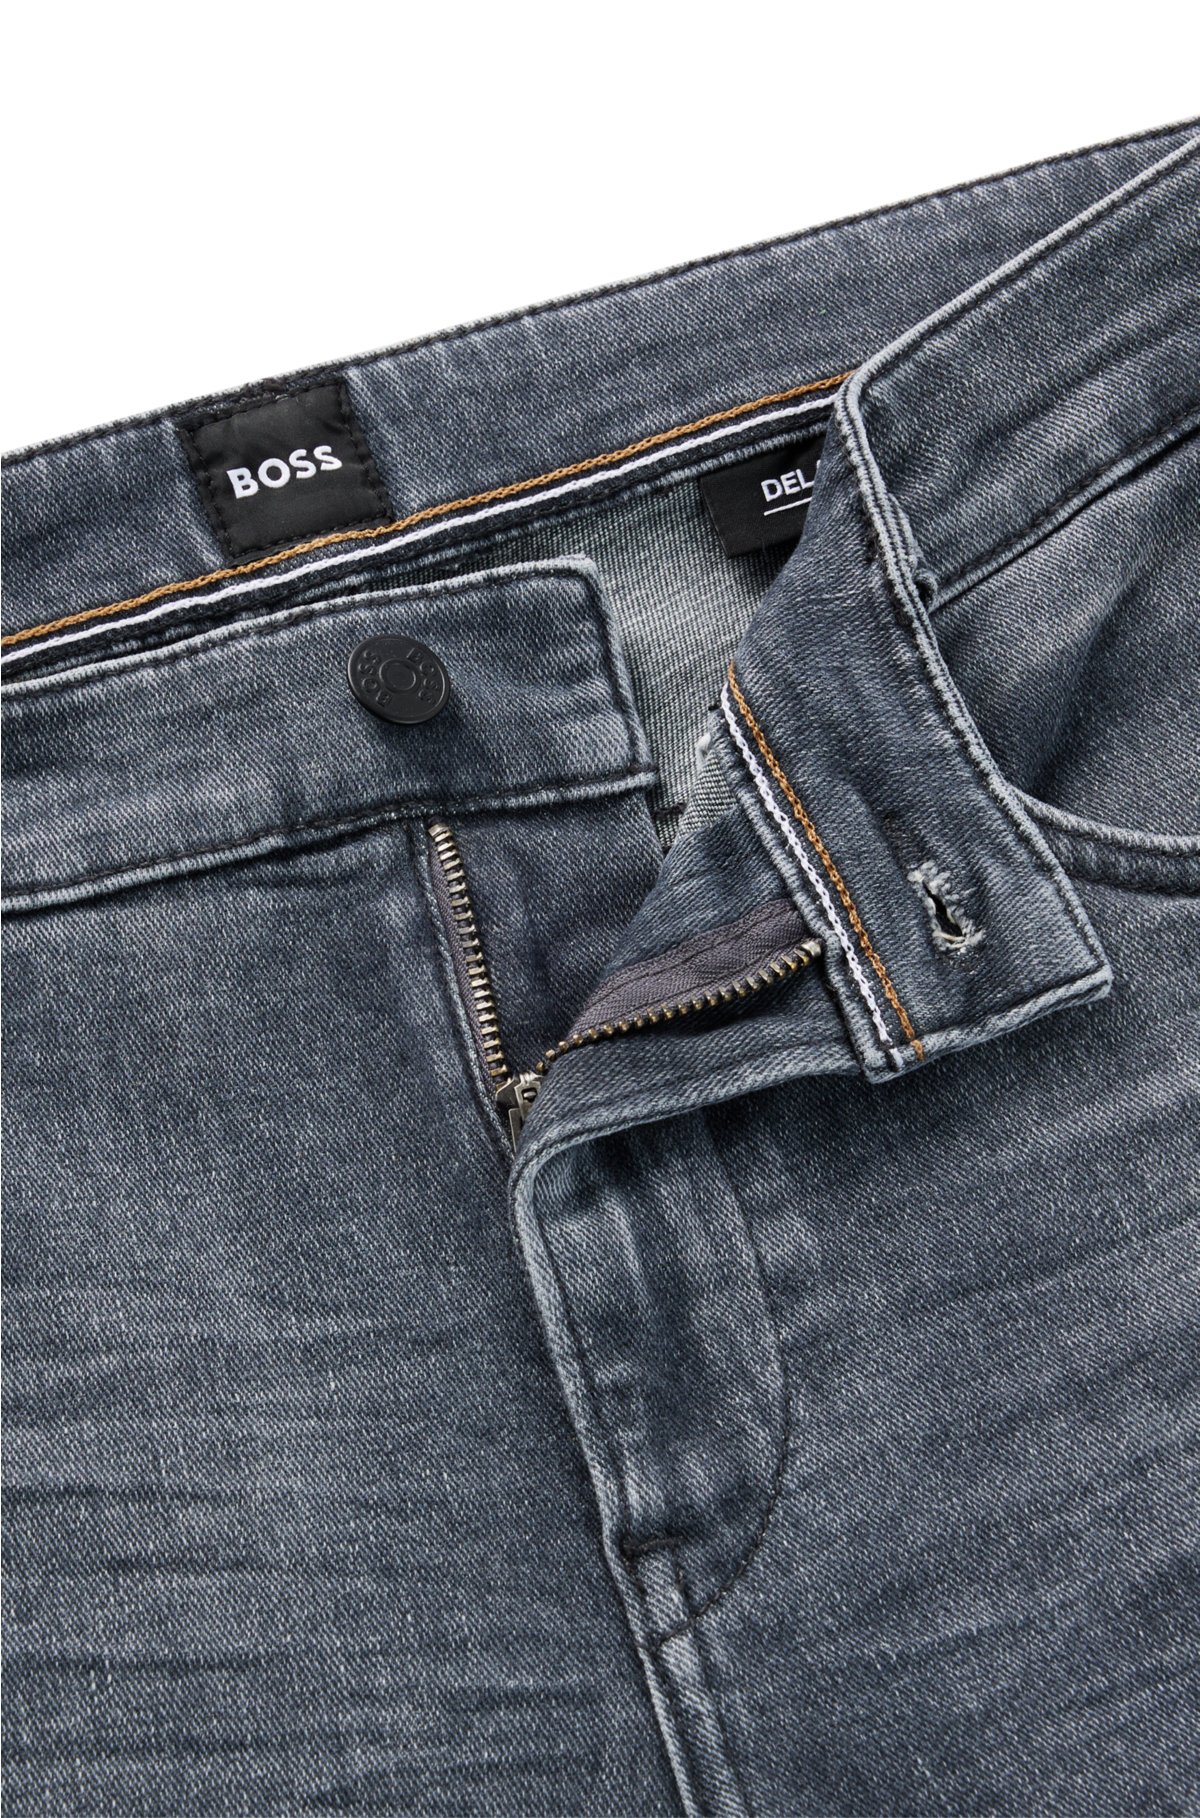 Tilkalde Håndskrift ego BOSS - Slim-fit jeans in gray Italian cashmere-touch denim